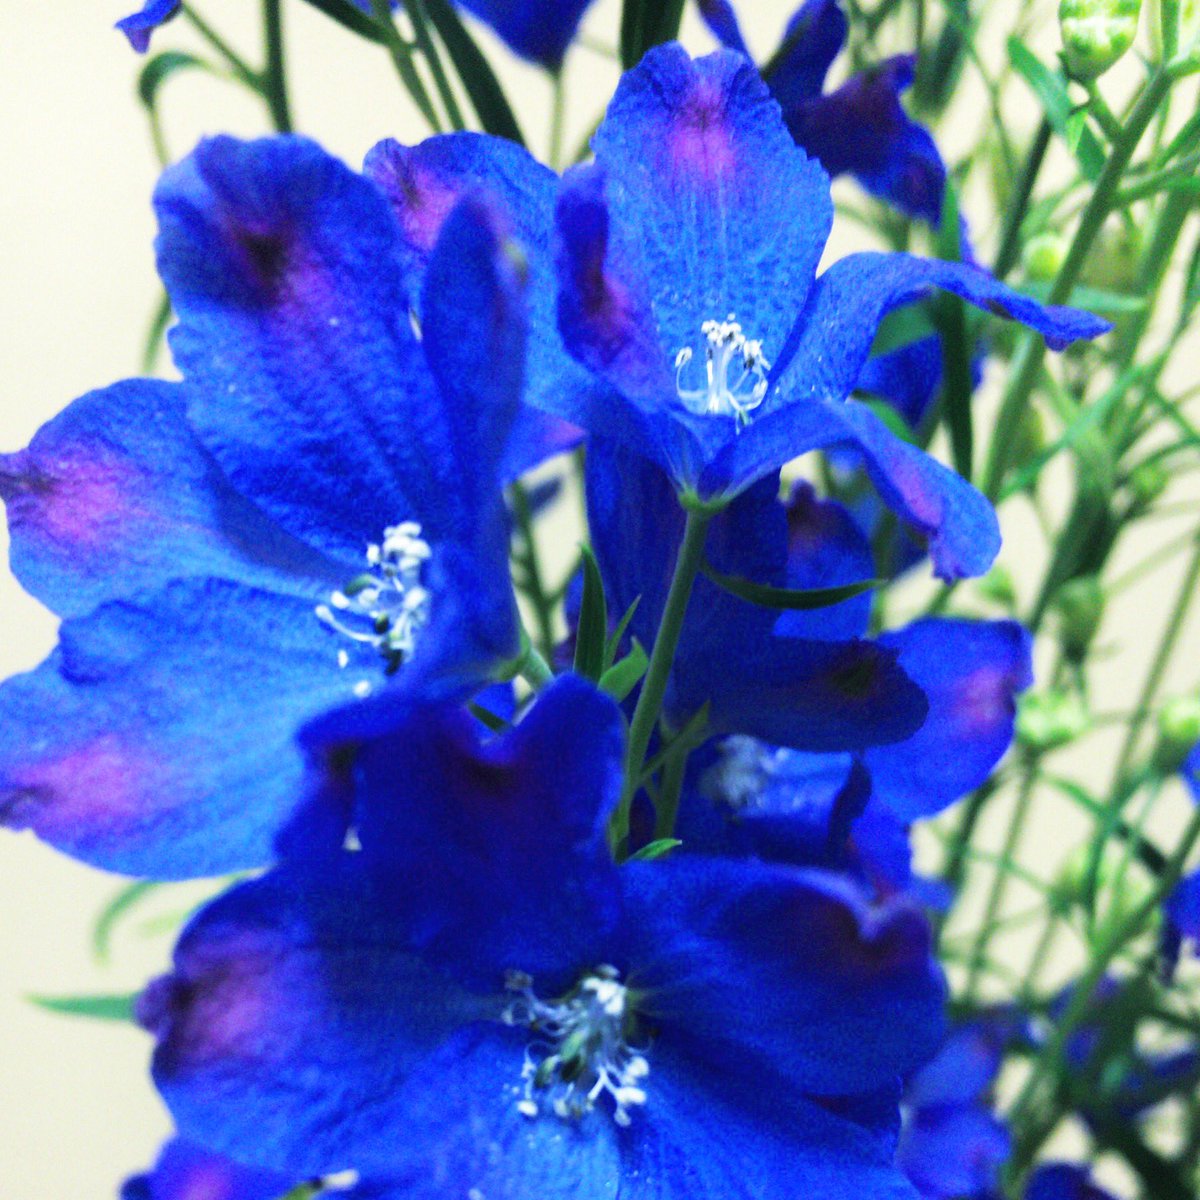 Chris デルフィニウム 大好きな青の花 花言葉 慈悲 あなたは幸せをふりまく 切り花です イルカの花 デルフィニウム ブルーフラワー Blueflower 青い花 花 はな フラワー ハナ Flower Flower ガーデニング ガーデン 花壇 T Co